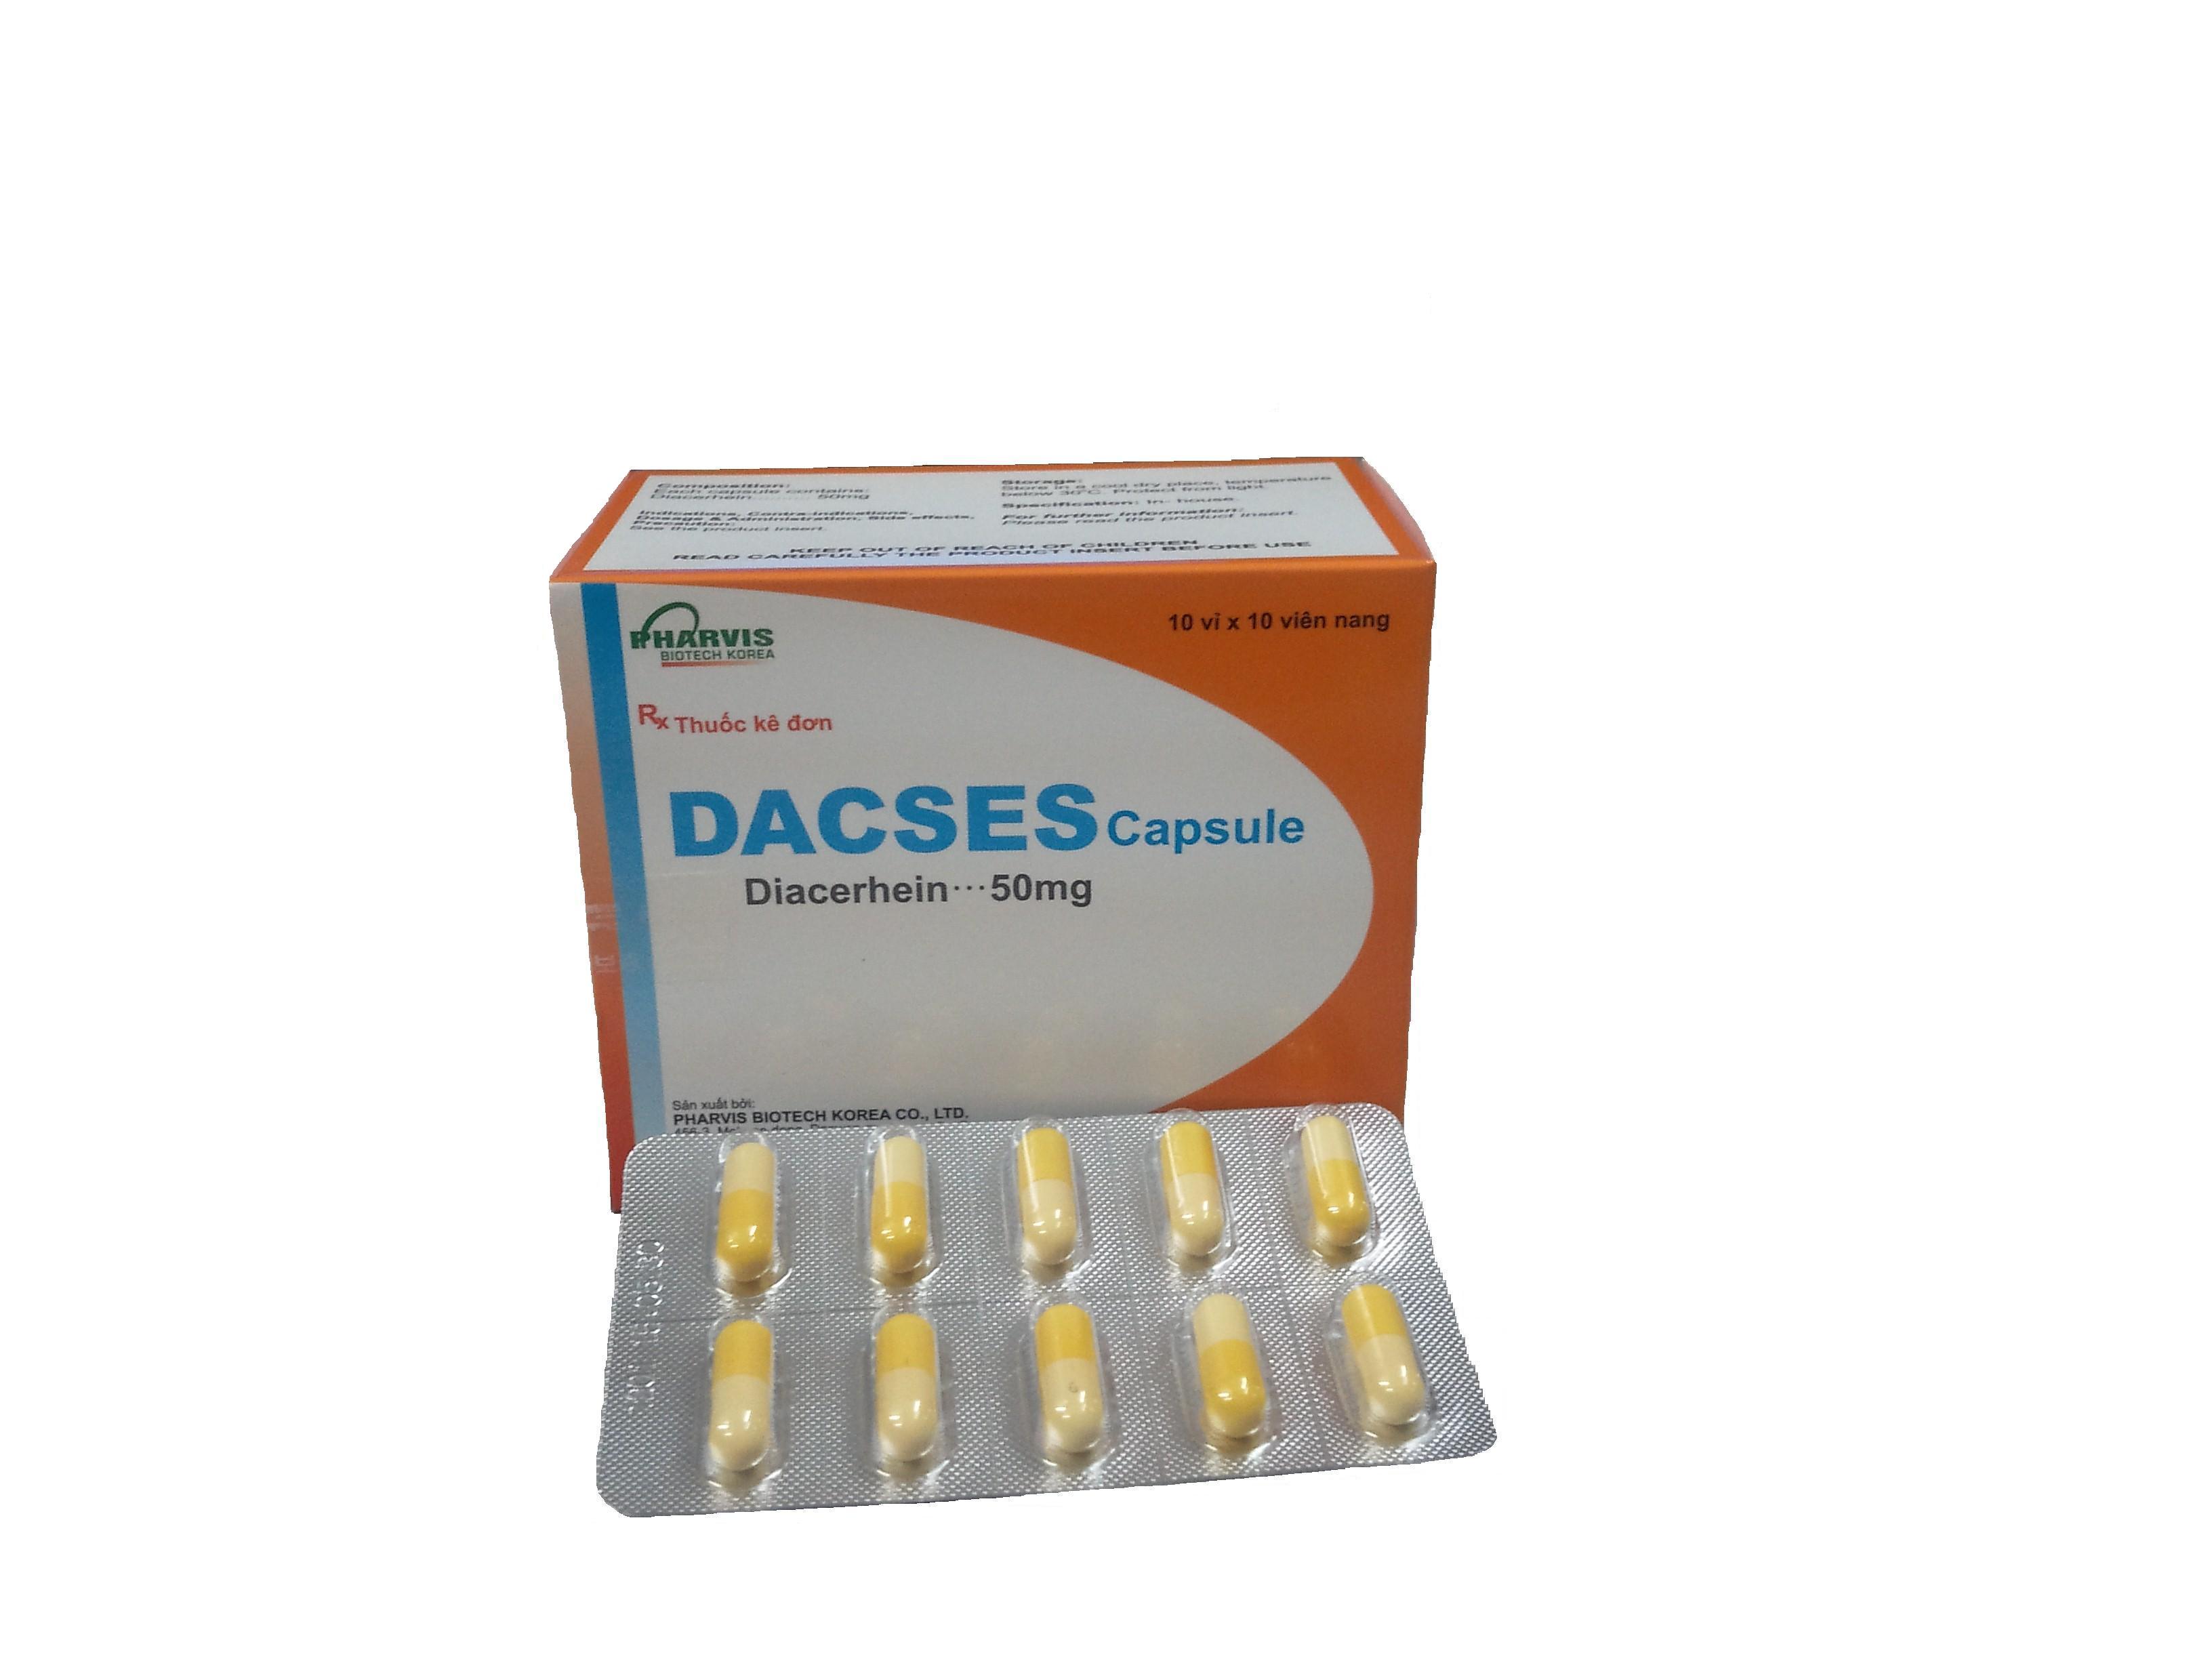 Dacses là thuốc chữa bệnh gì, có tác dụng gì, giá bán bao nhiêu?